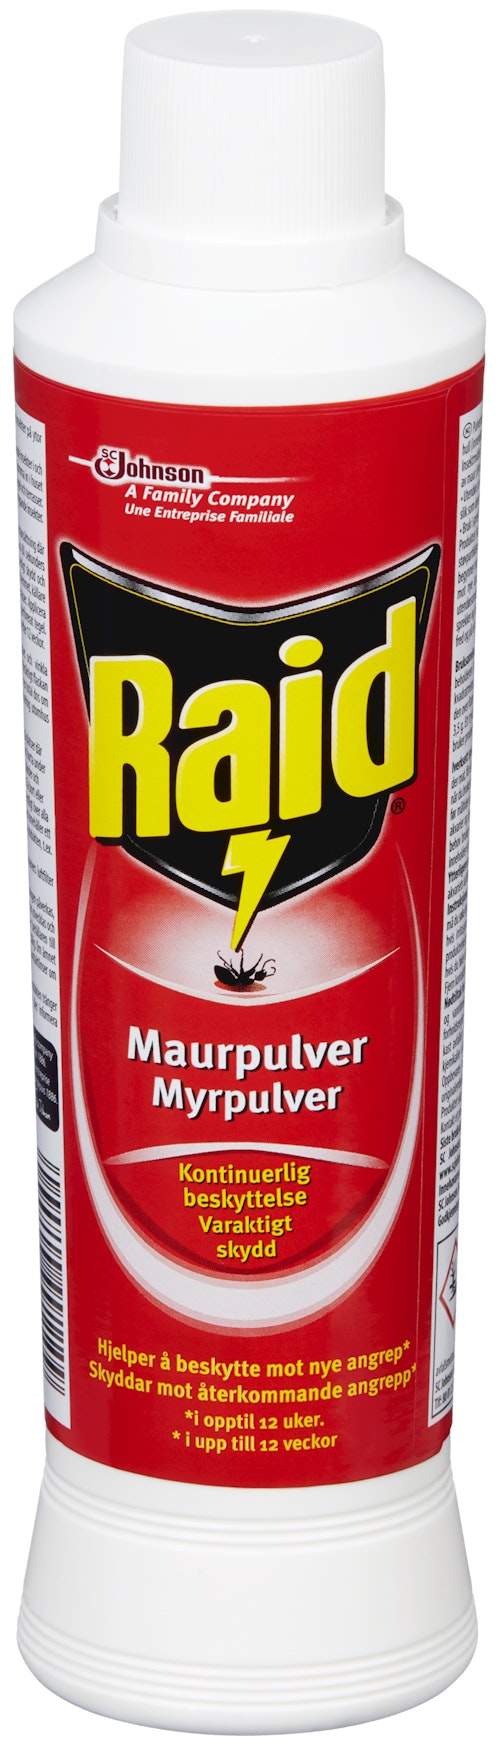 Raid Raid Maurpulver